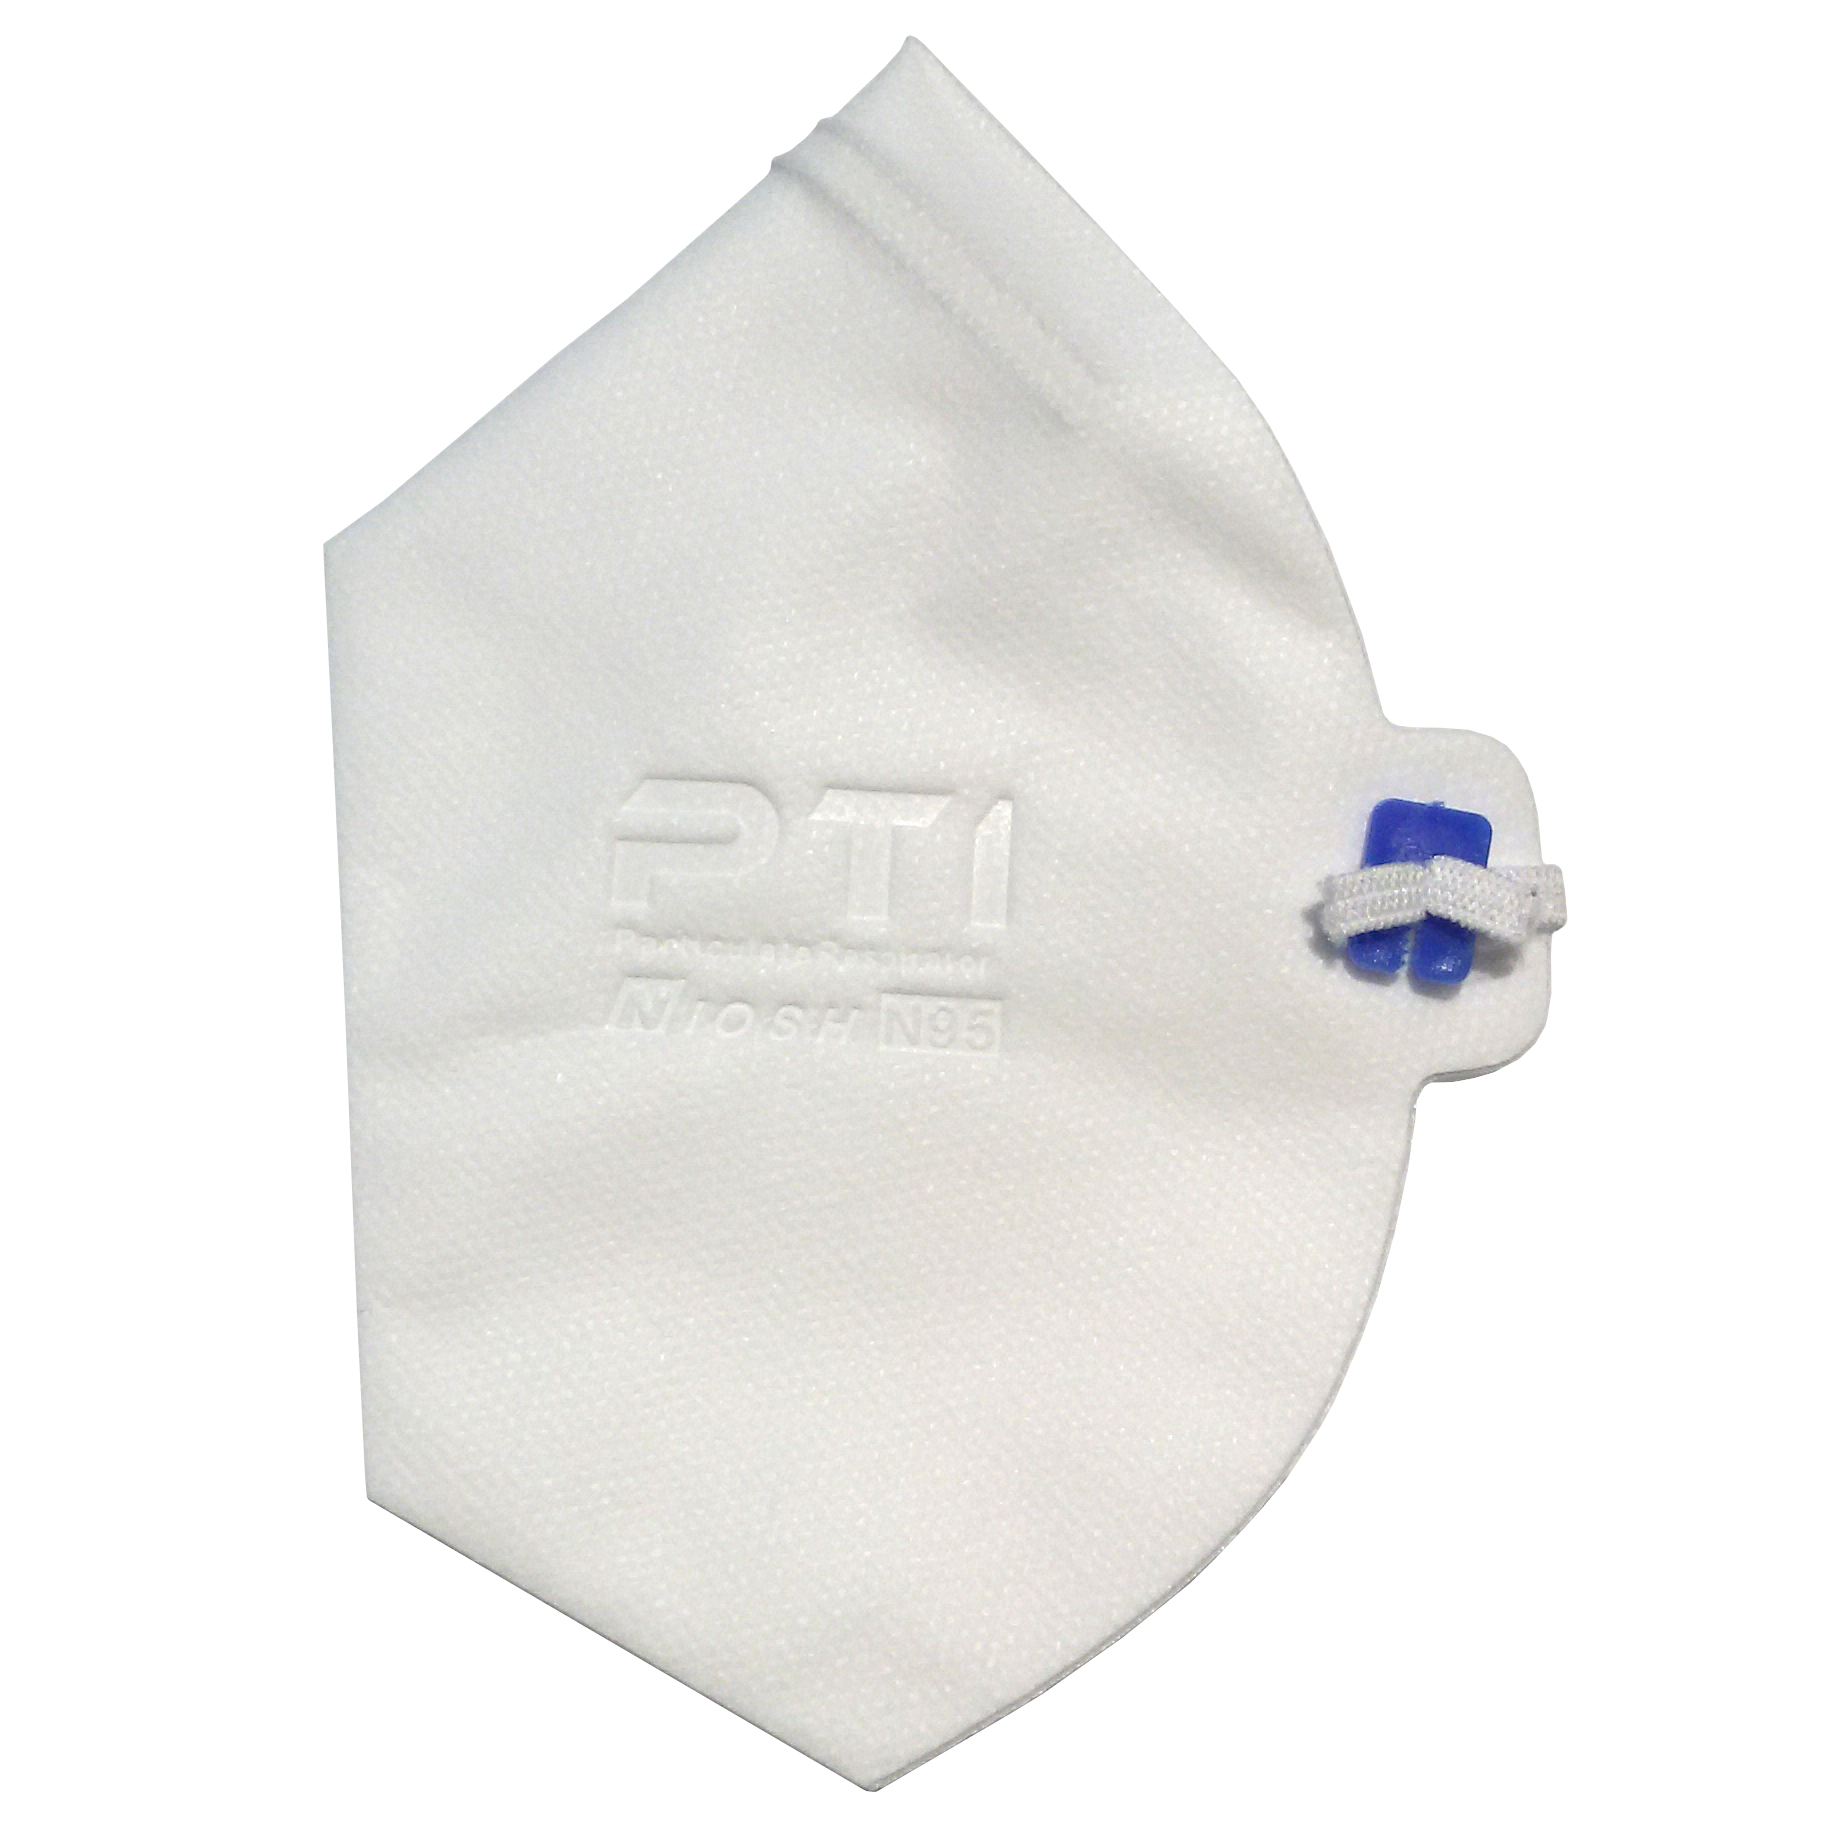 ماسک تنفسی مدل PTI-N95-WH20 بسته 20 عددی